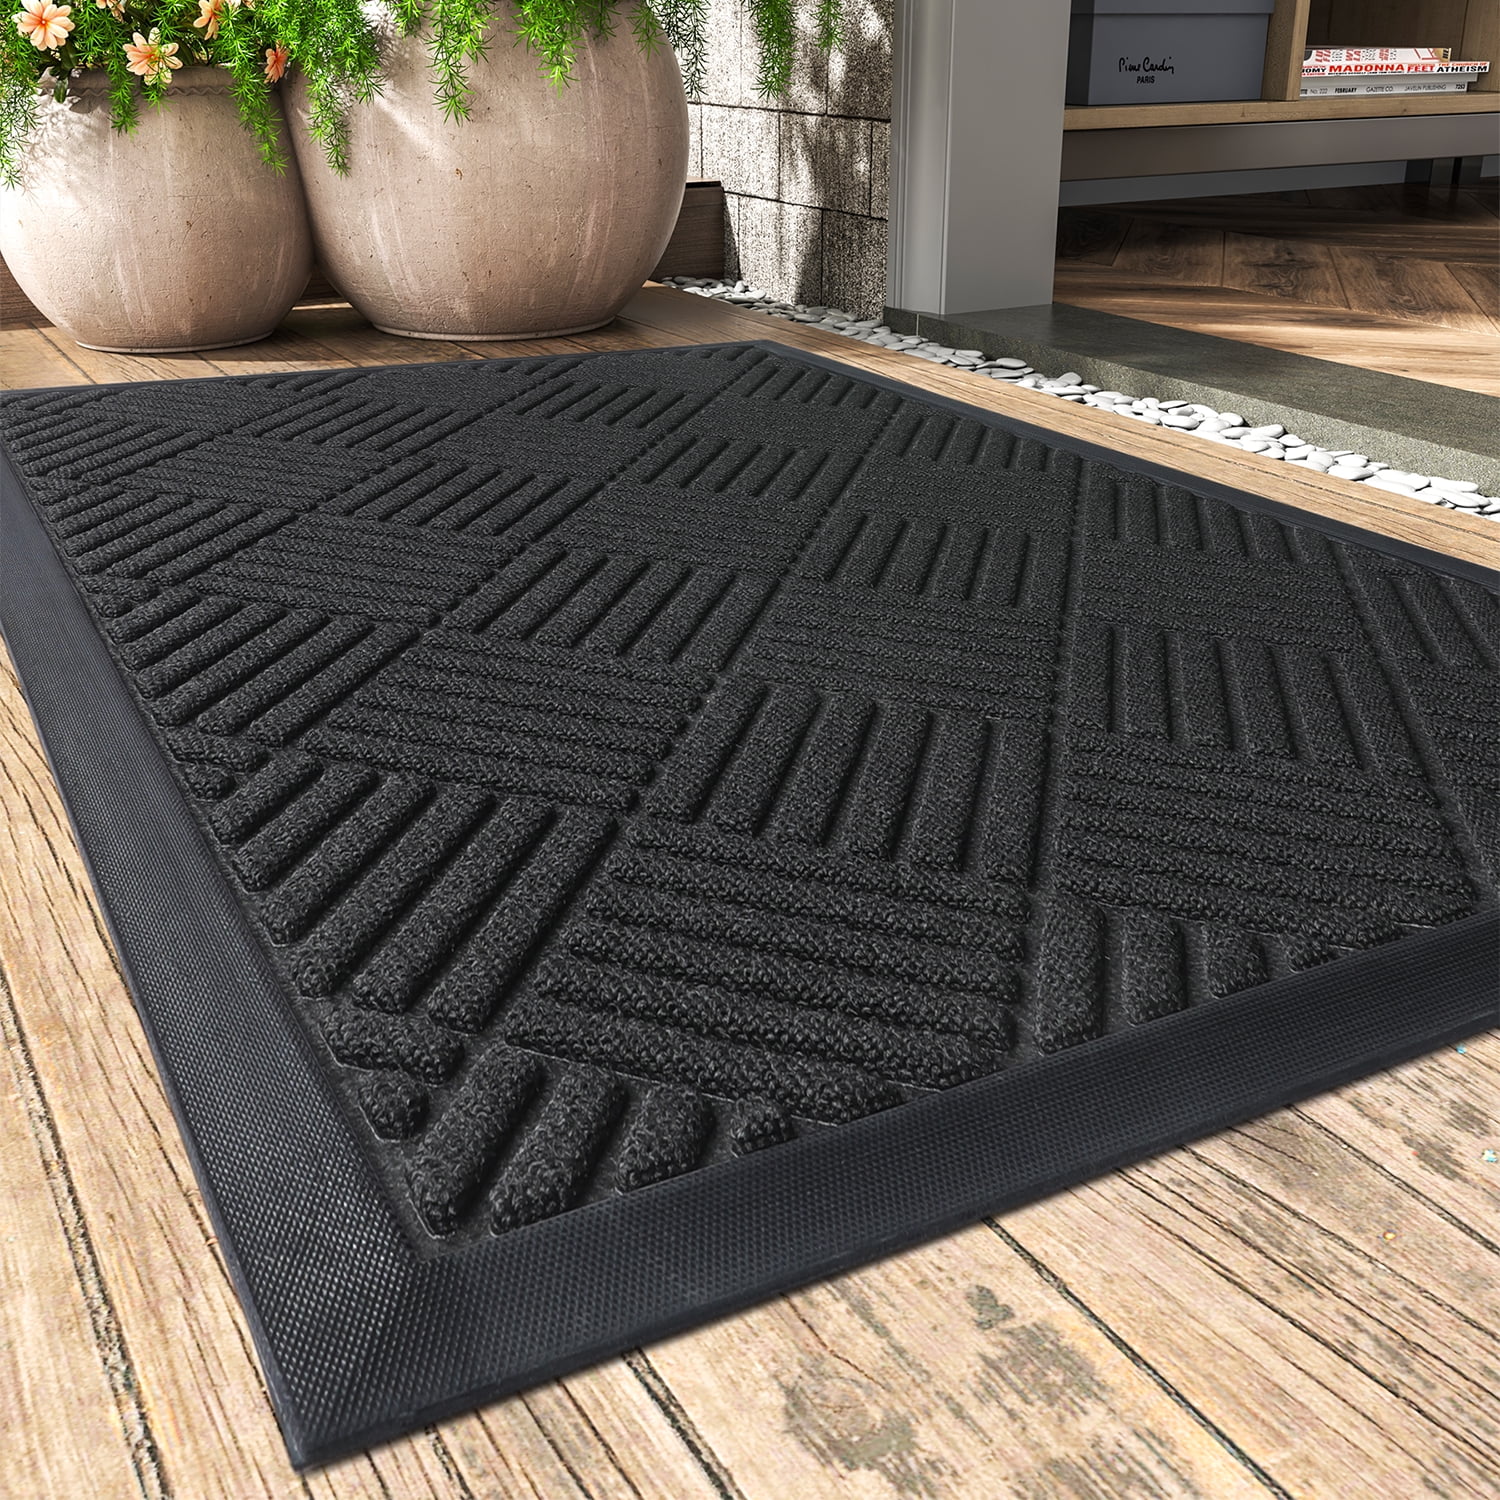 AMIDA Indoor Doormat 20x31 Washable Non Slip Door Mat for